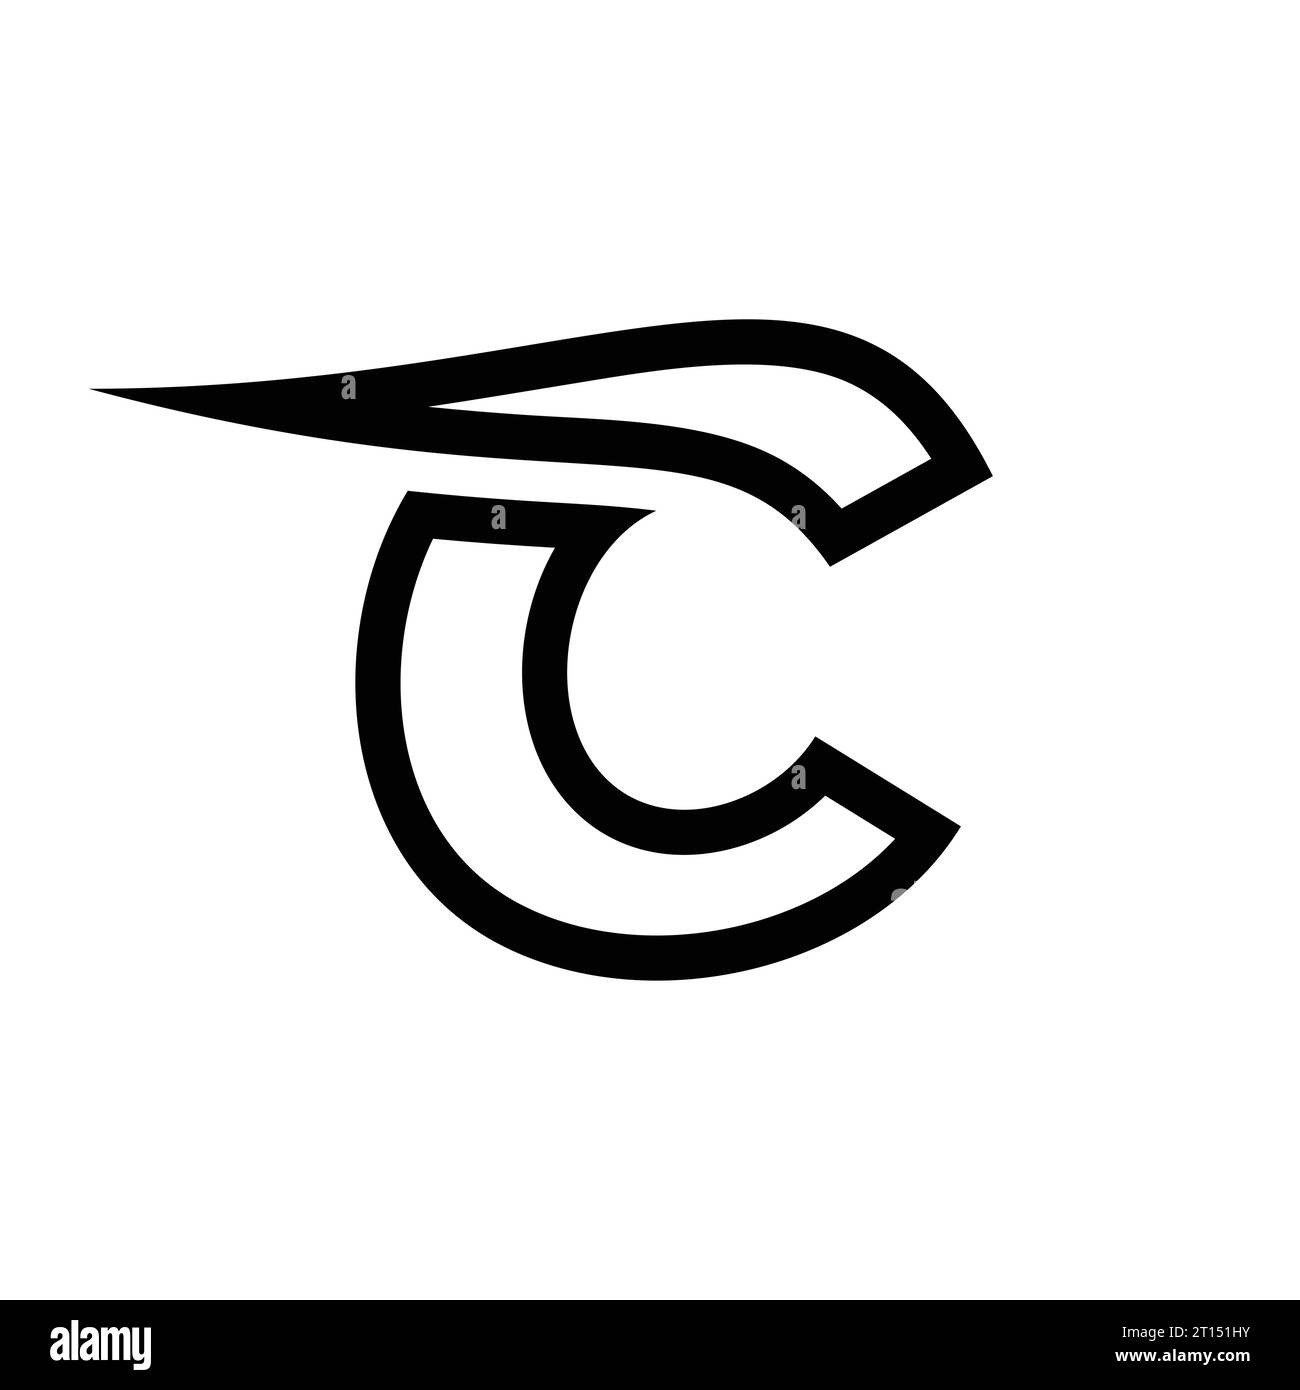 C logo design, C monogram, initials C icon, letter C logo, icon, vector Stock Vector